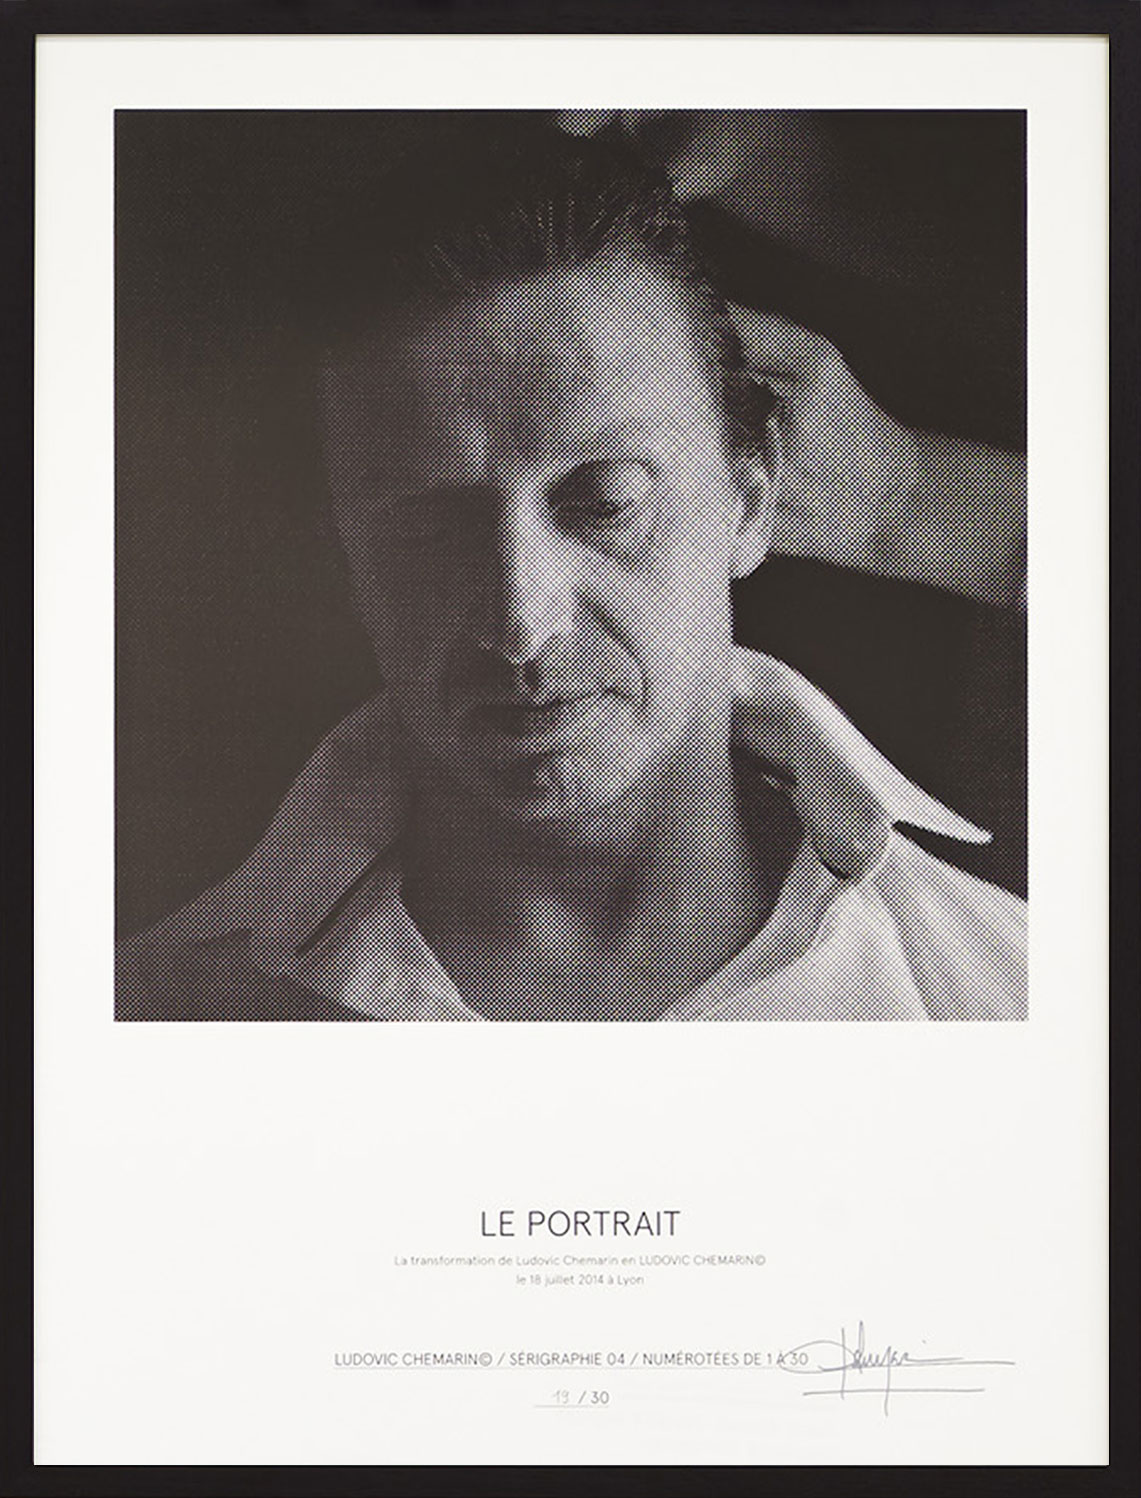 Ludovic Chemarin© - Le portrait, 2015